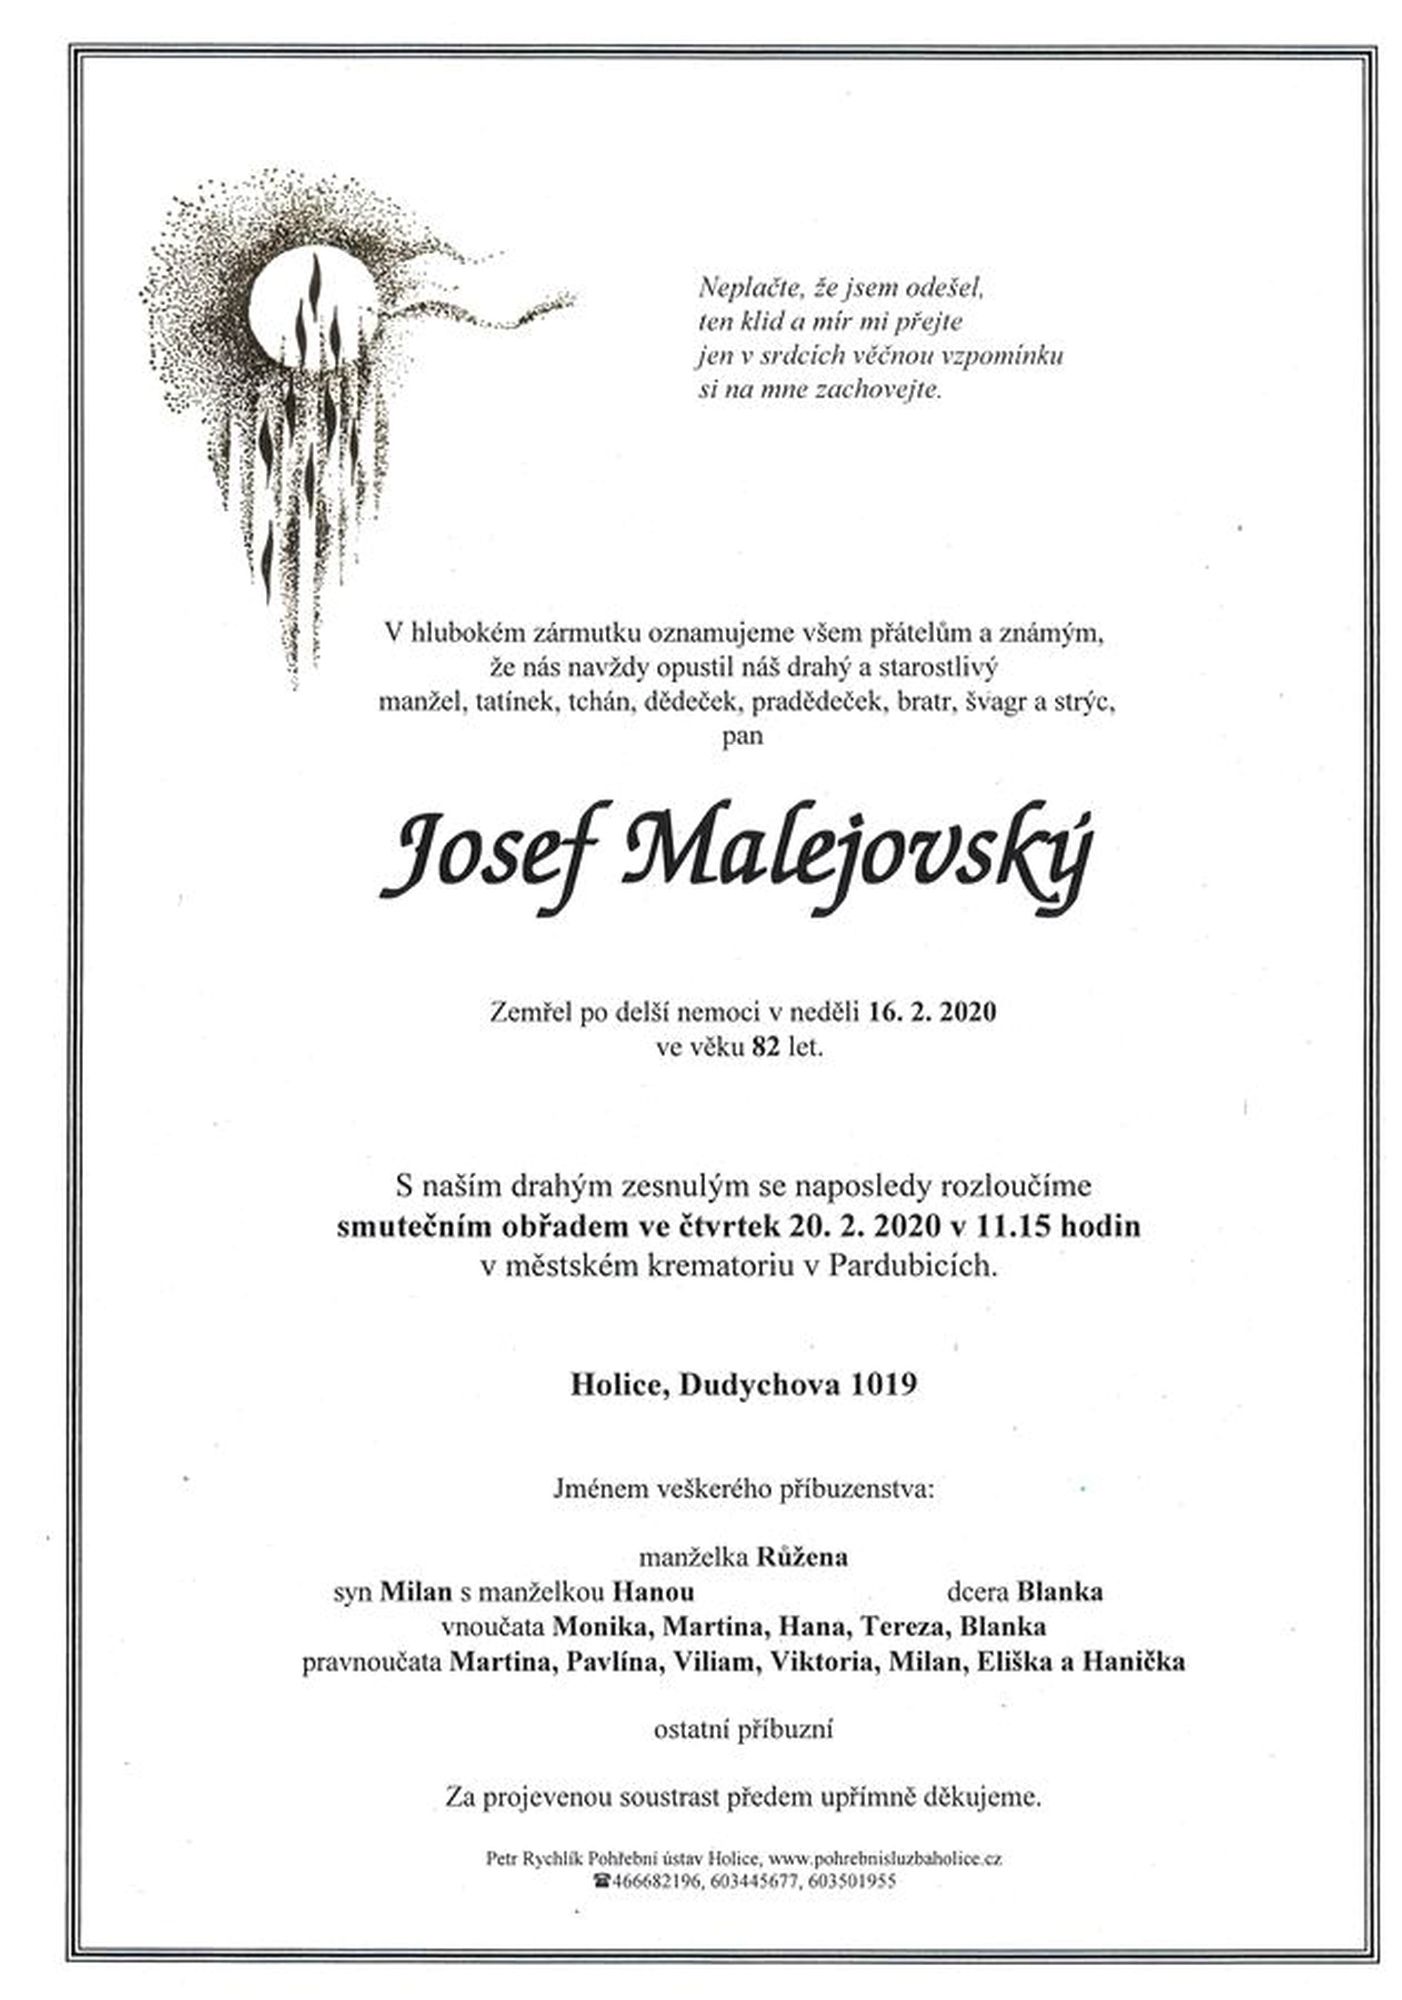 Josef Malejovský